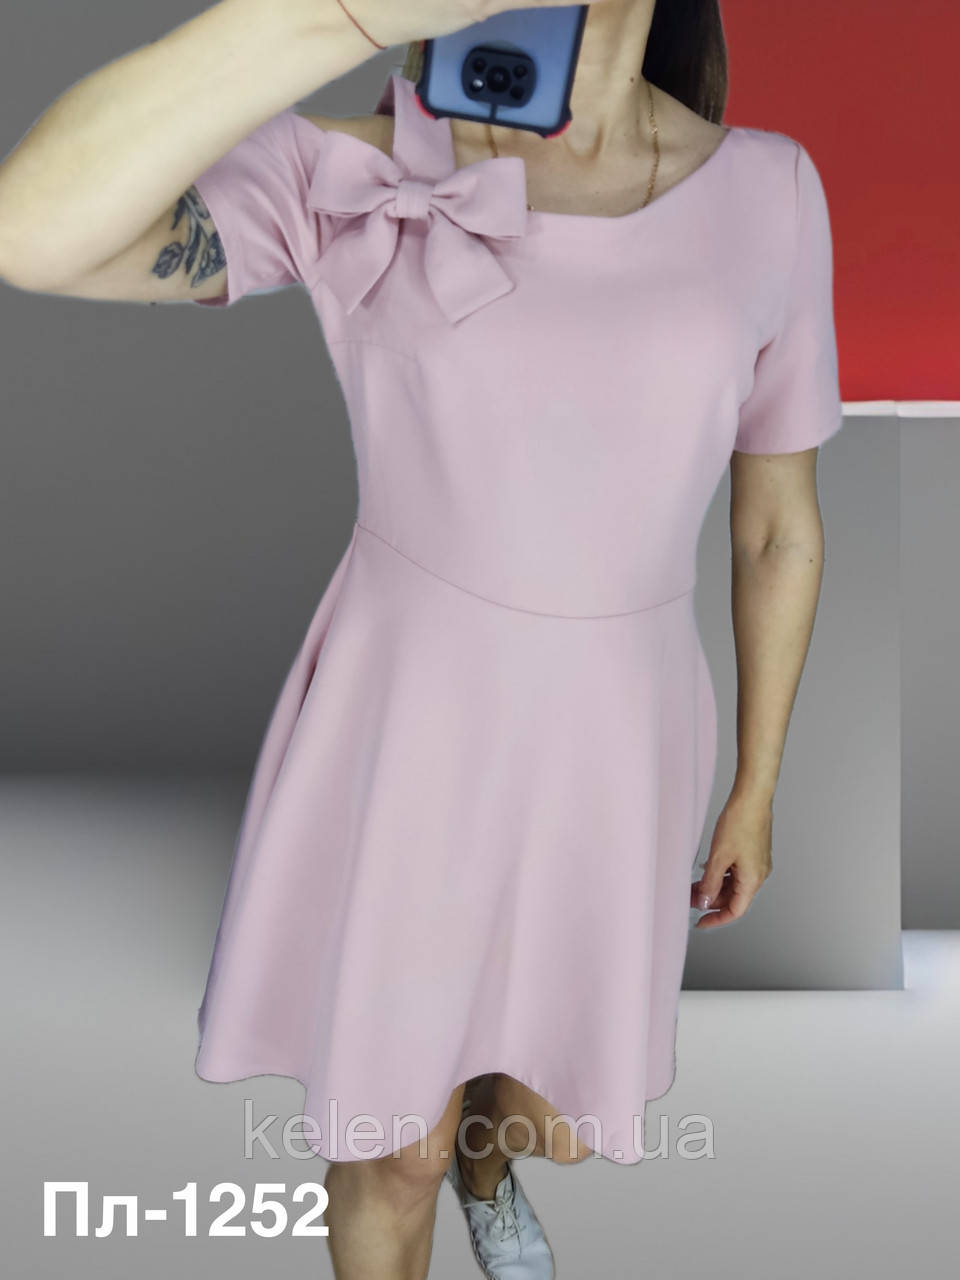 Плаття коктельне в ніжно-рожевому кольорі розмір L ( укр 46-48)